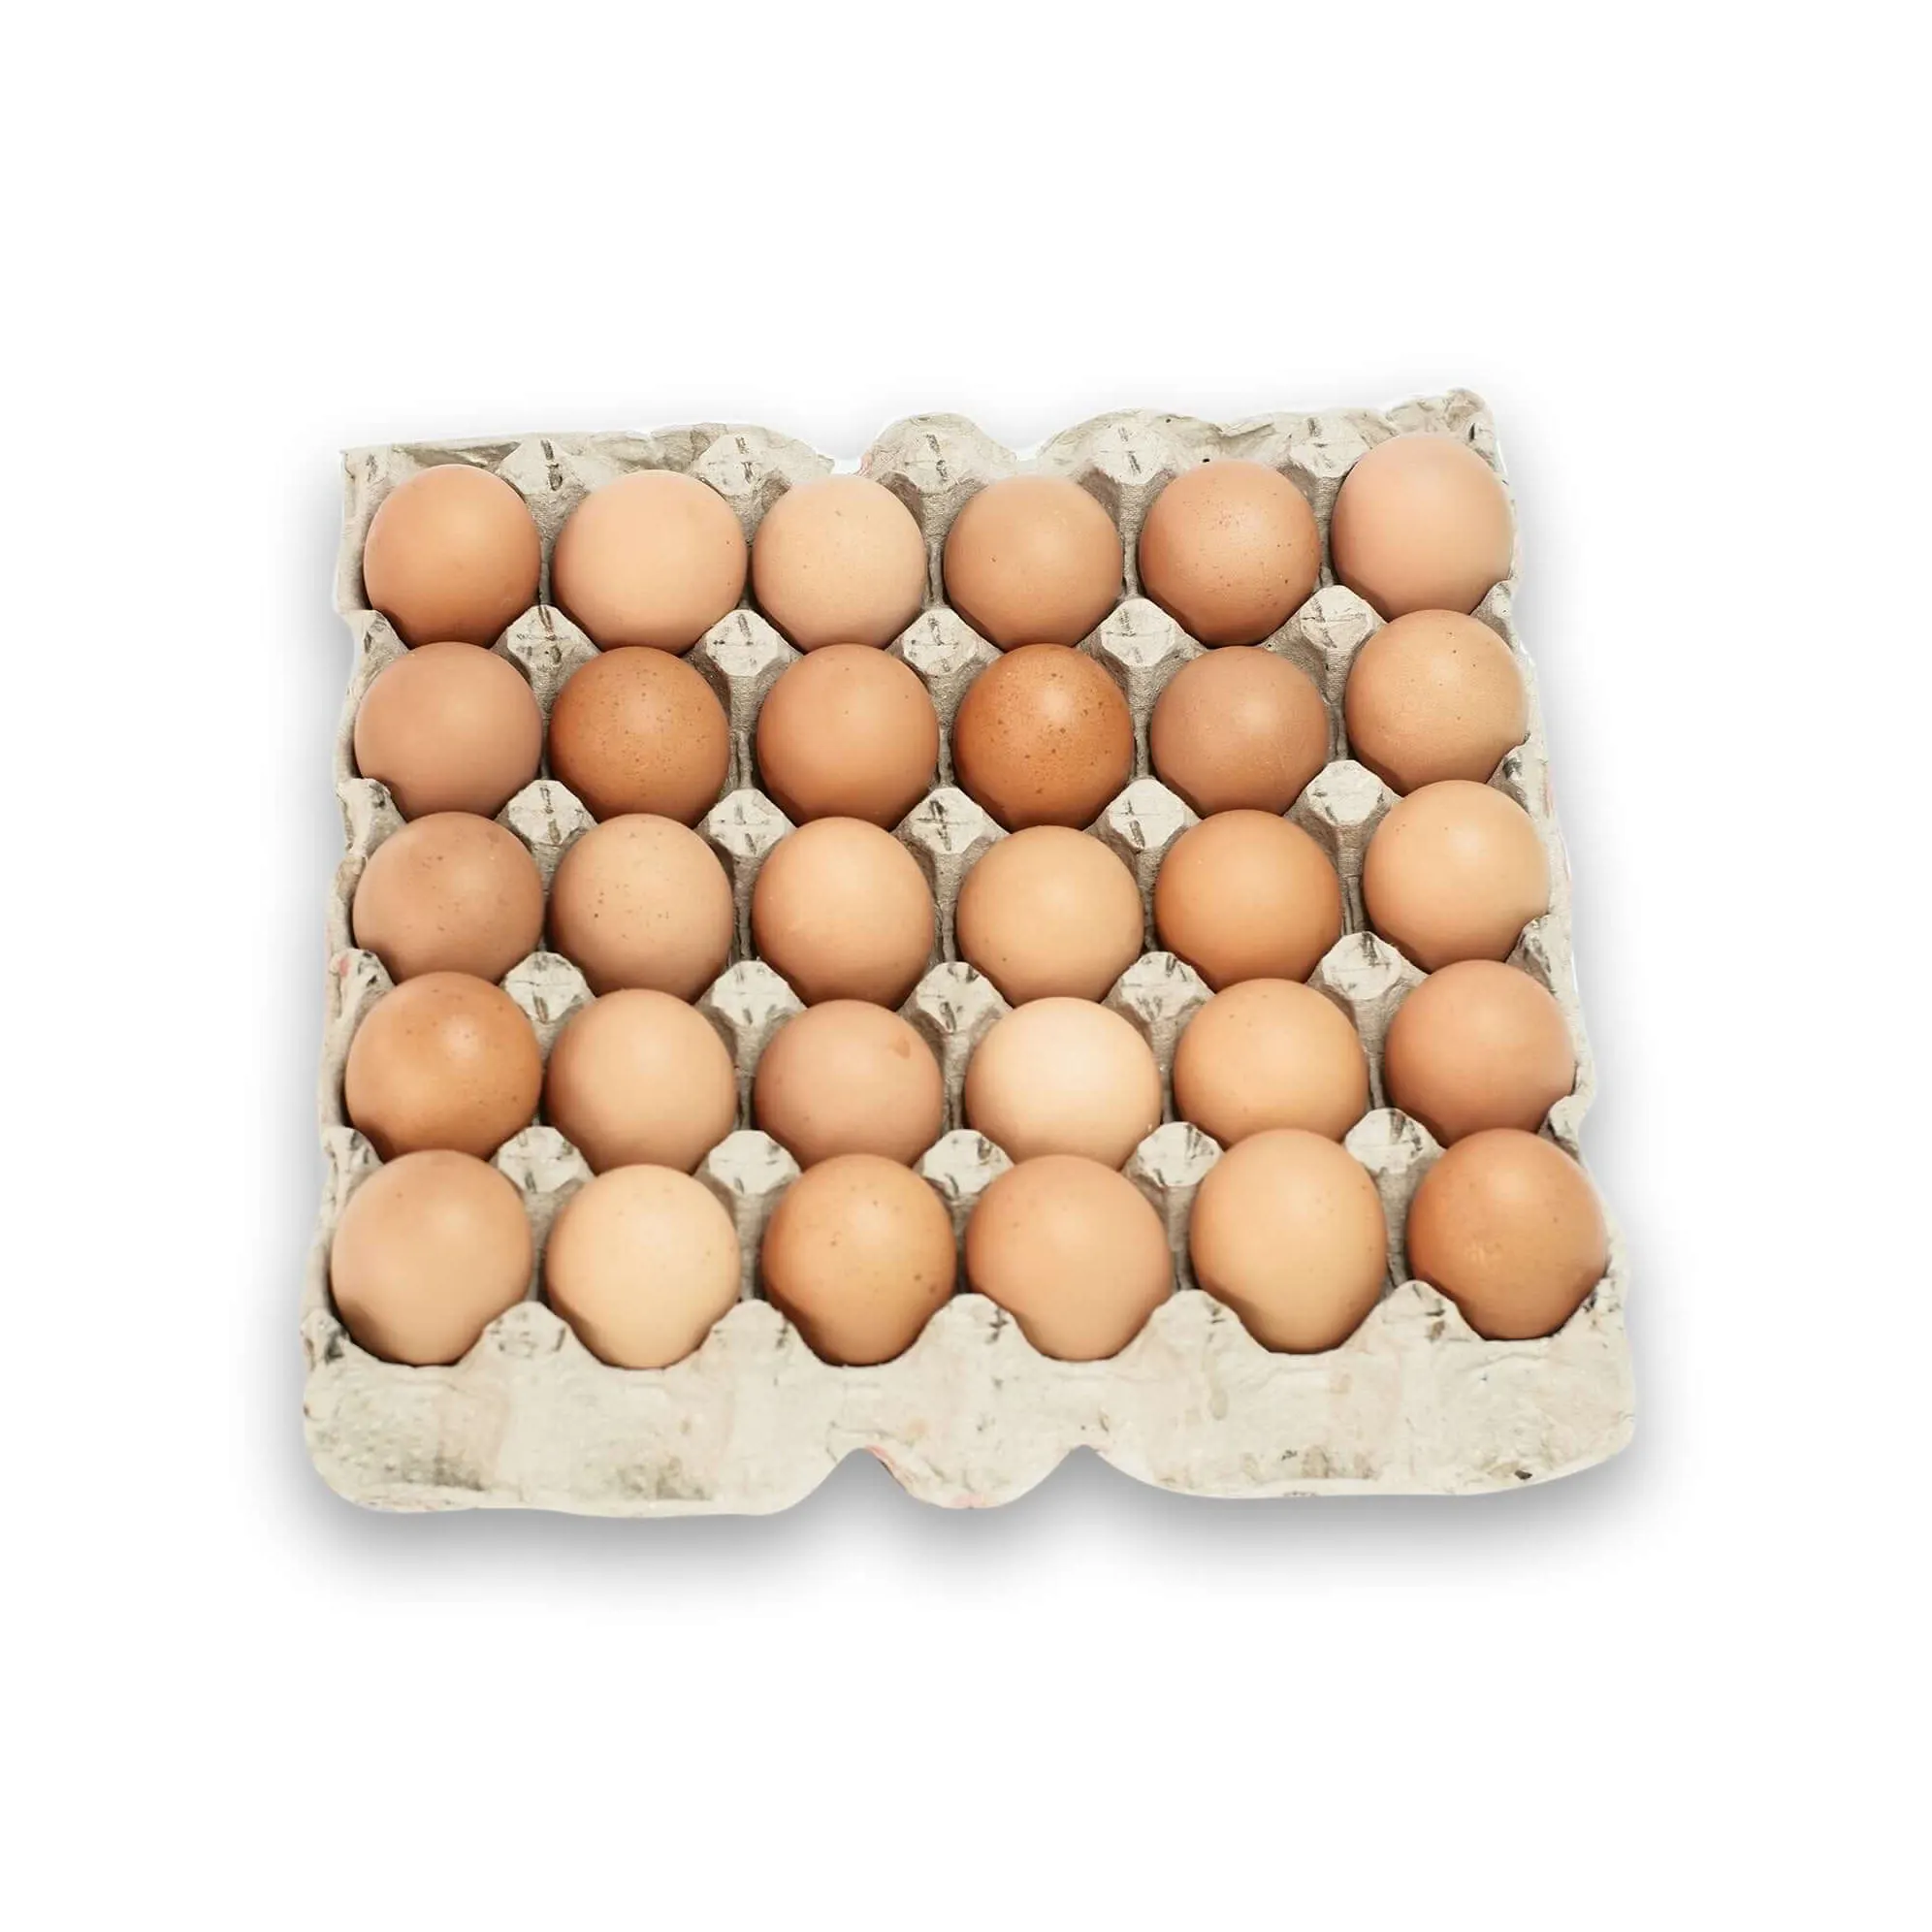 सबसे अच्छी गुणवत्ता वाले कार्बनिक ताजा चिकन ब्राउन टेबल अंडे और थोक स्टॉक में उपलब्ध निषेचित अंडे